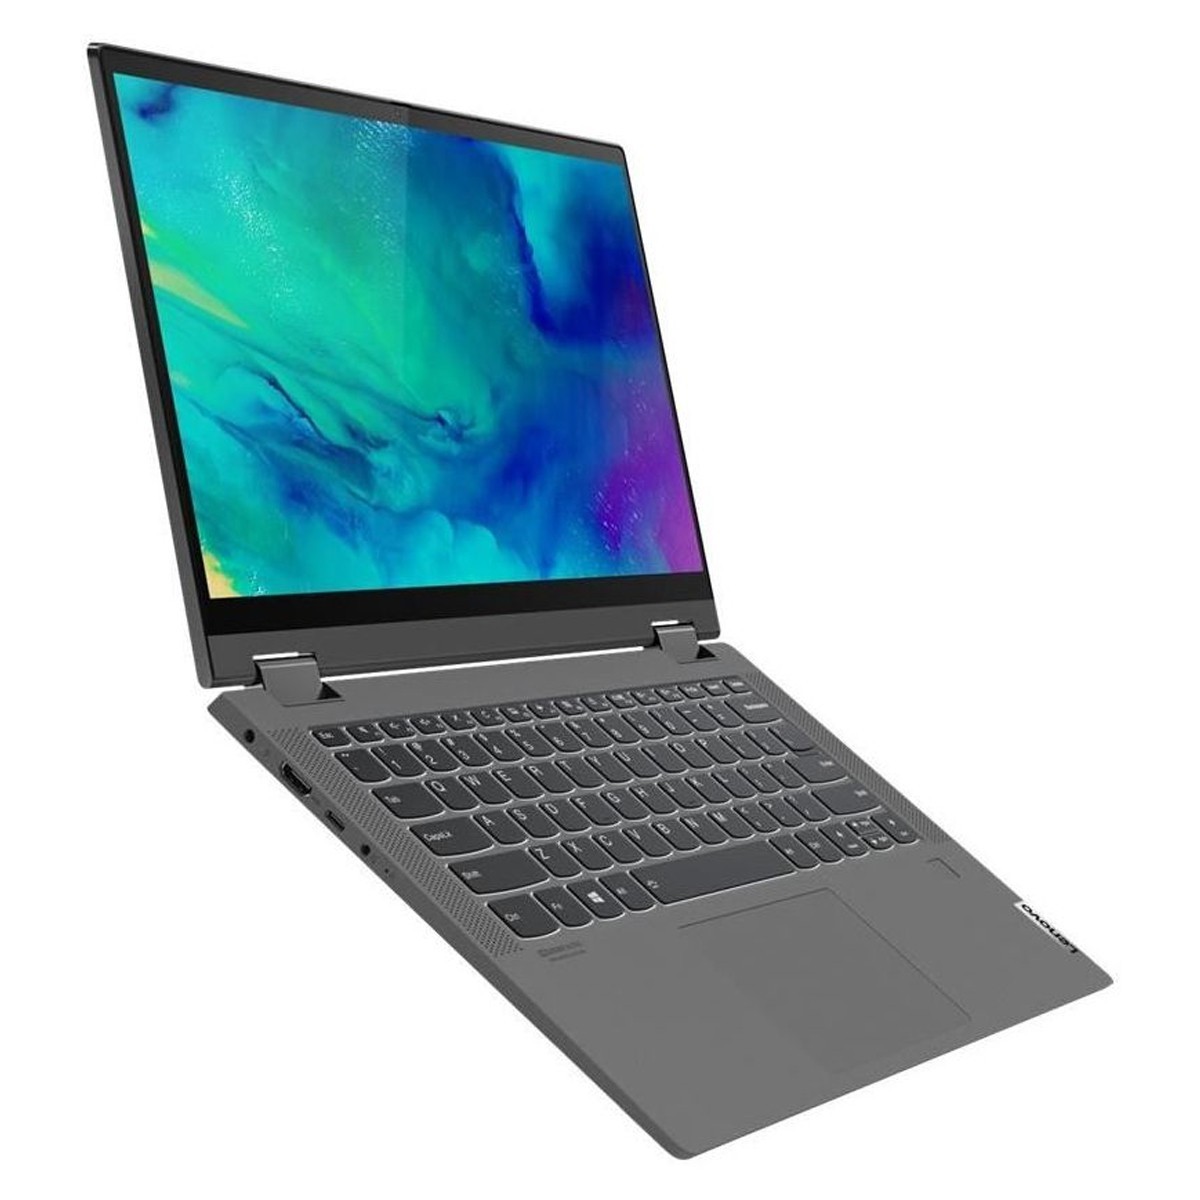 لپ تاپ لنوو مدل Lenovo IdeaPad Flex 5 Intel Core I7 1165G7